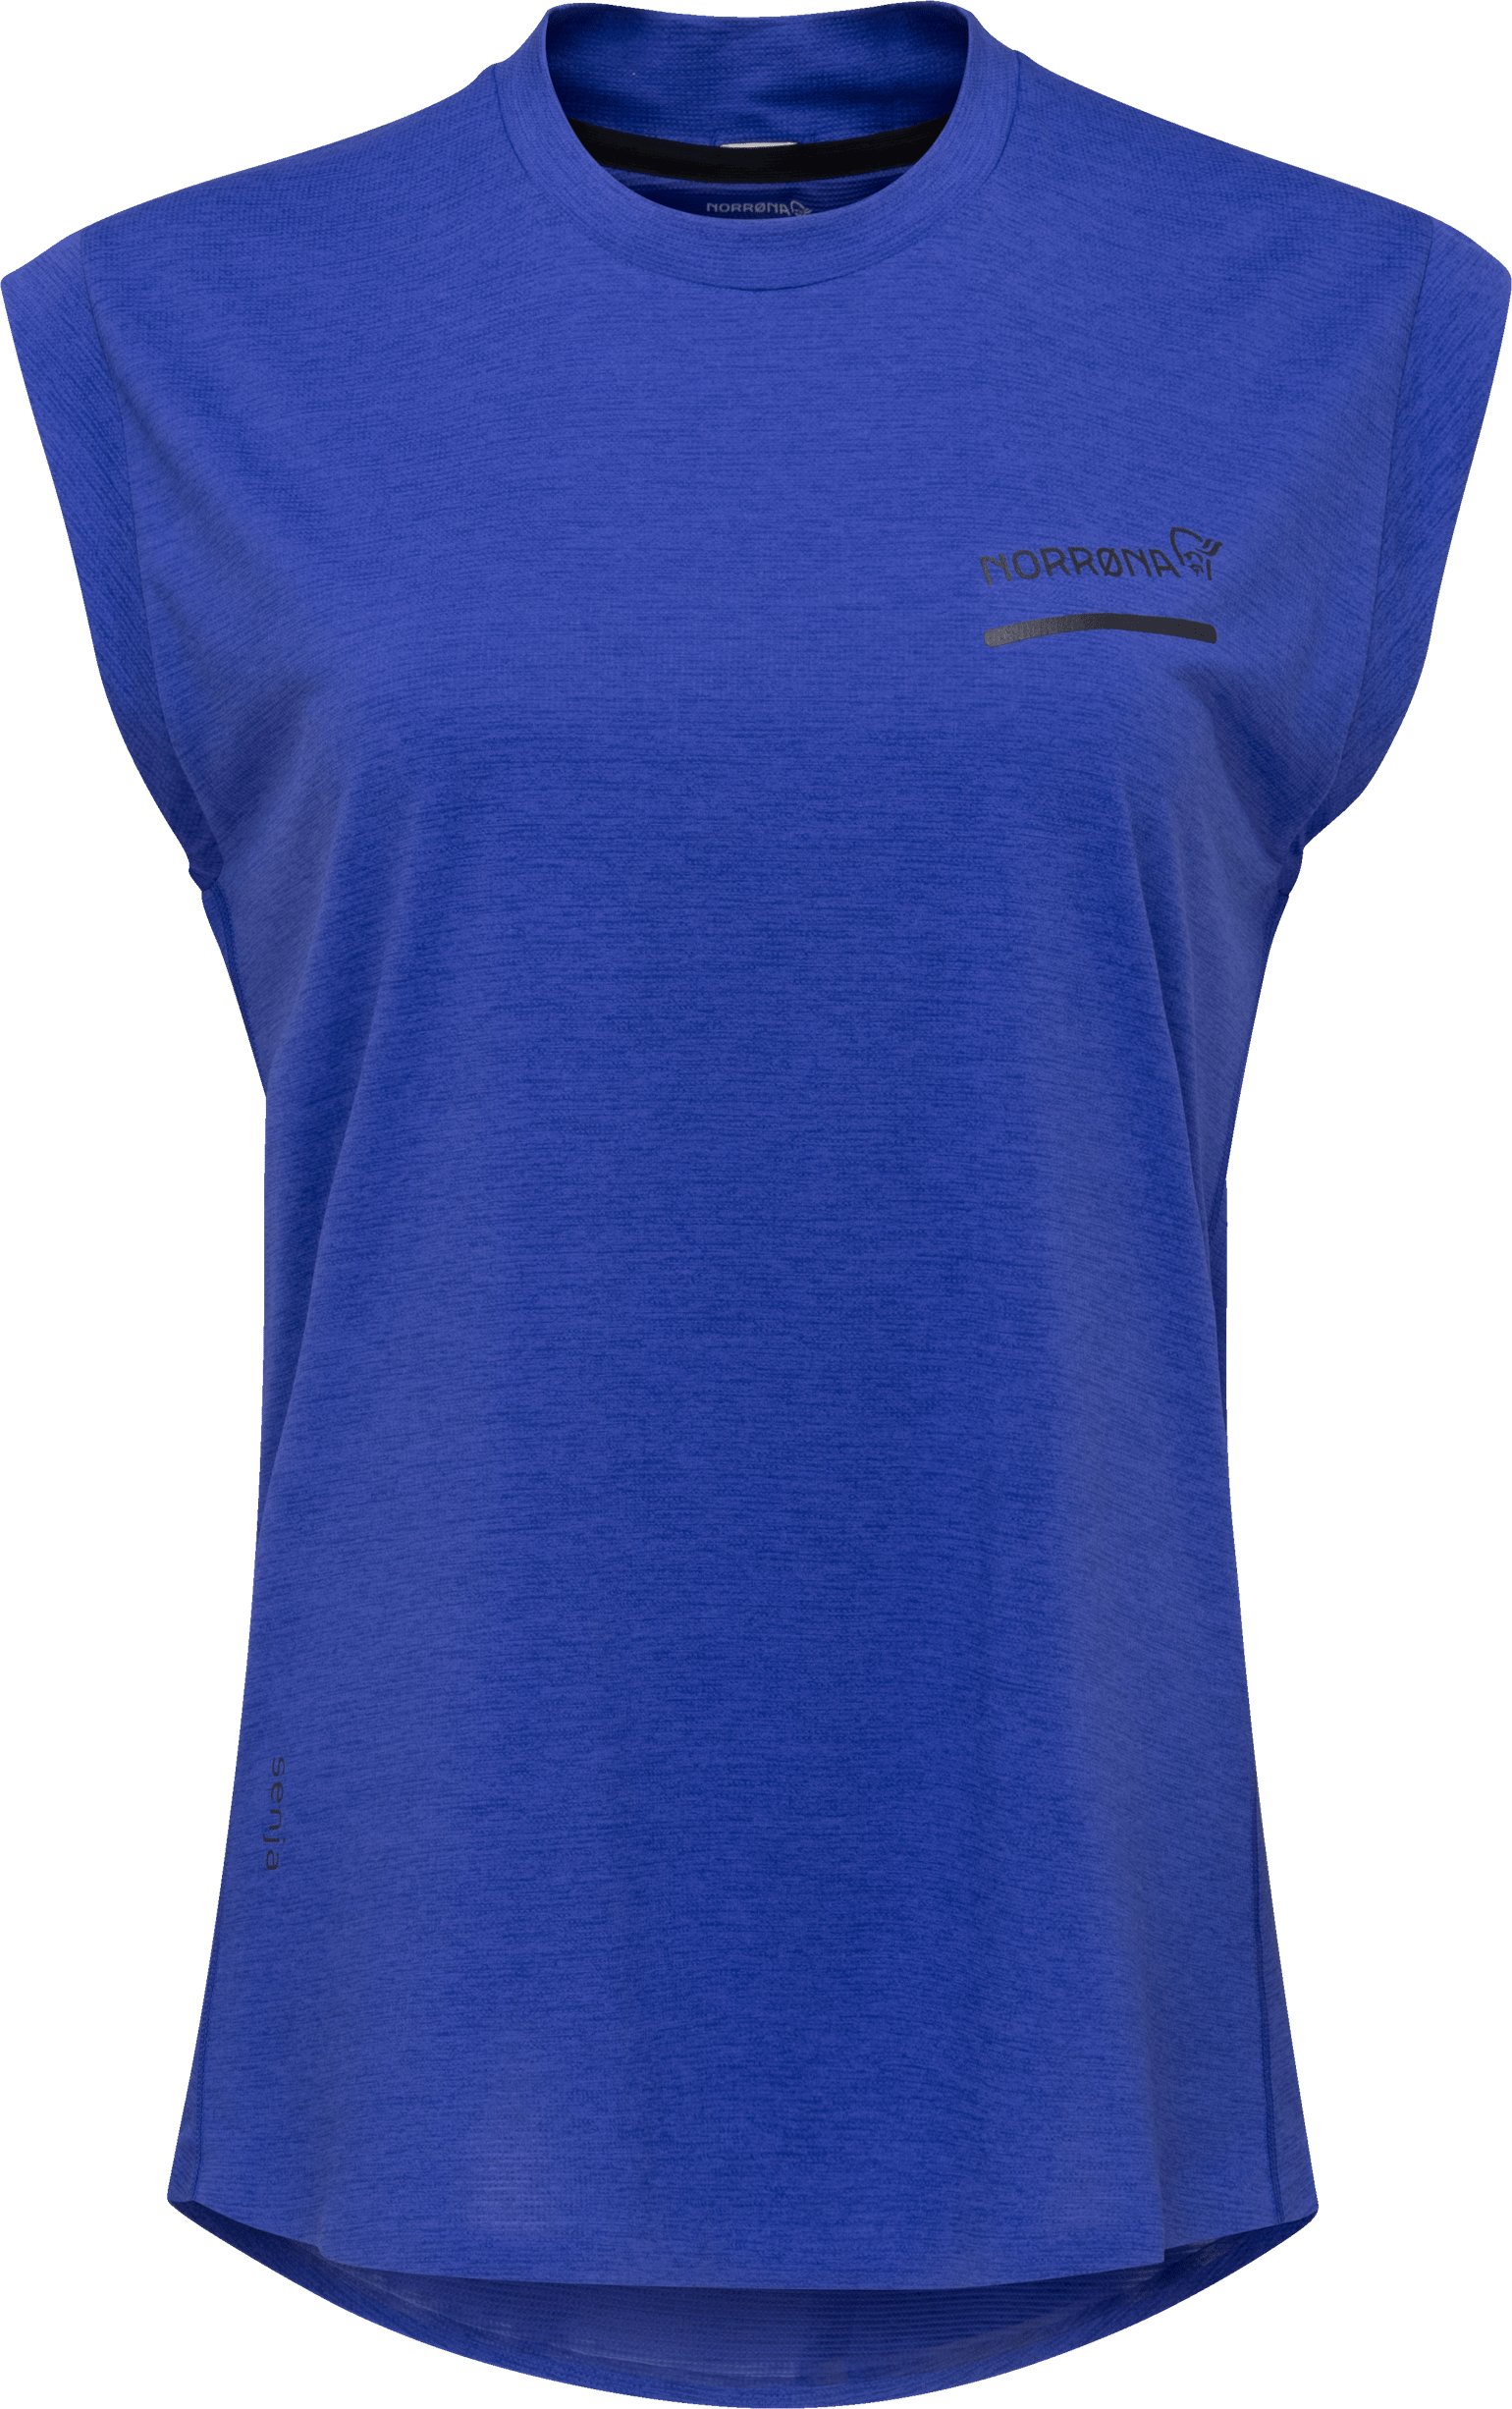 Norrøna Women's Senja Equaliser Sleeveless T-Shirt Royal Blue